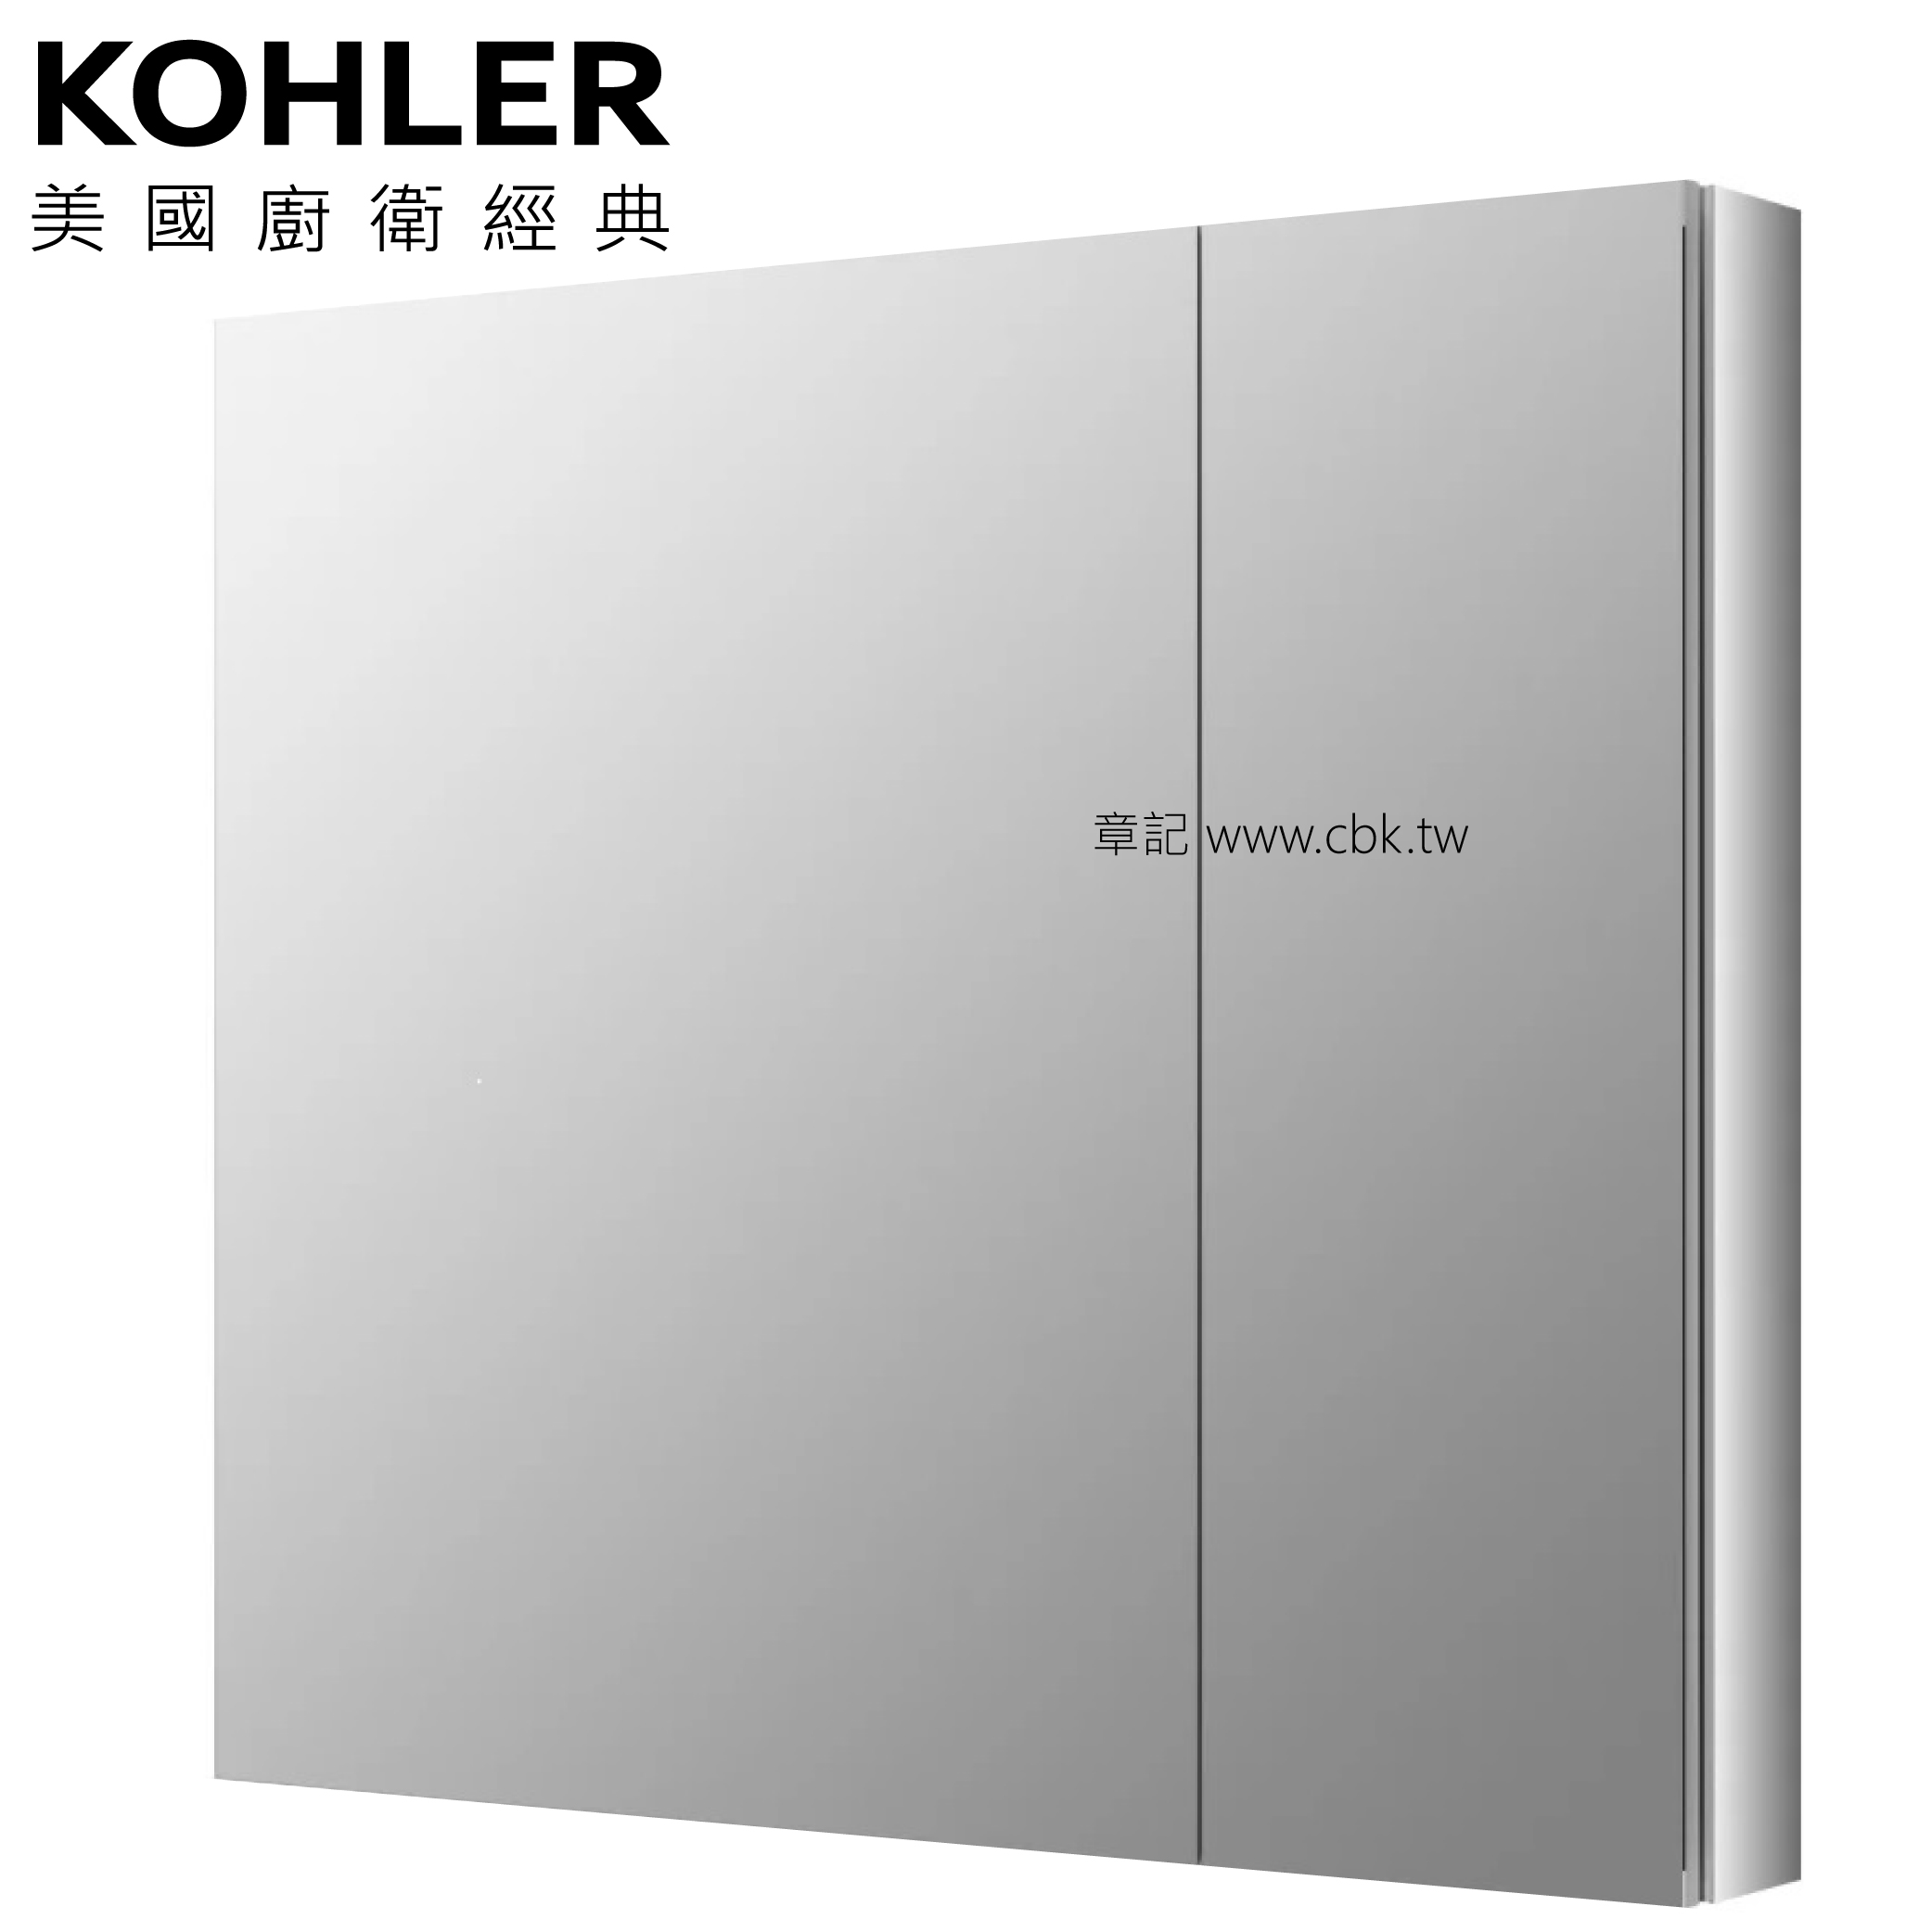 <已停產> KOHLER Verdera 鏡櫃 (87cm) K-99009T-NA  |明鏡 . 鏡櫃|鏡櫃